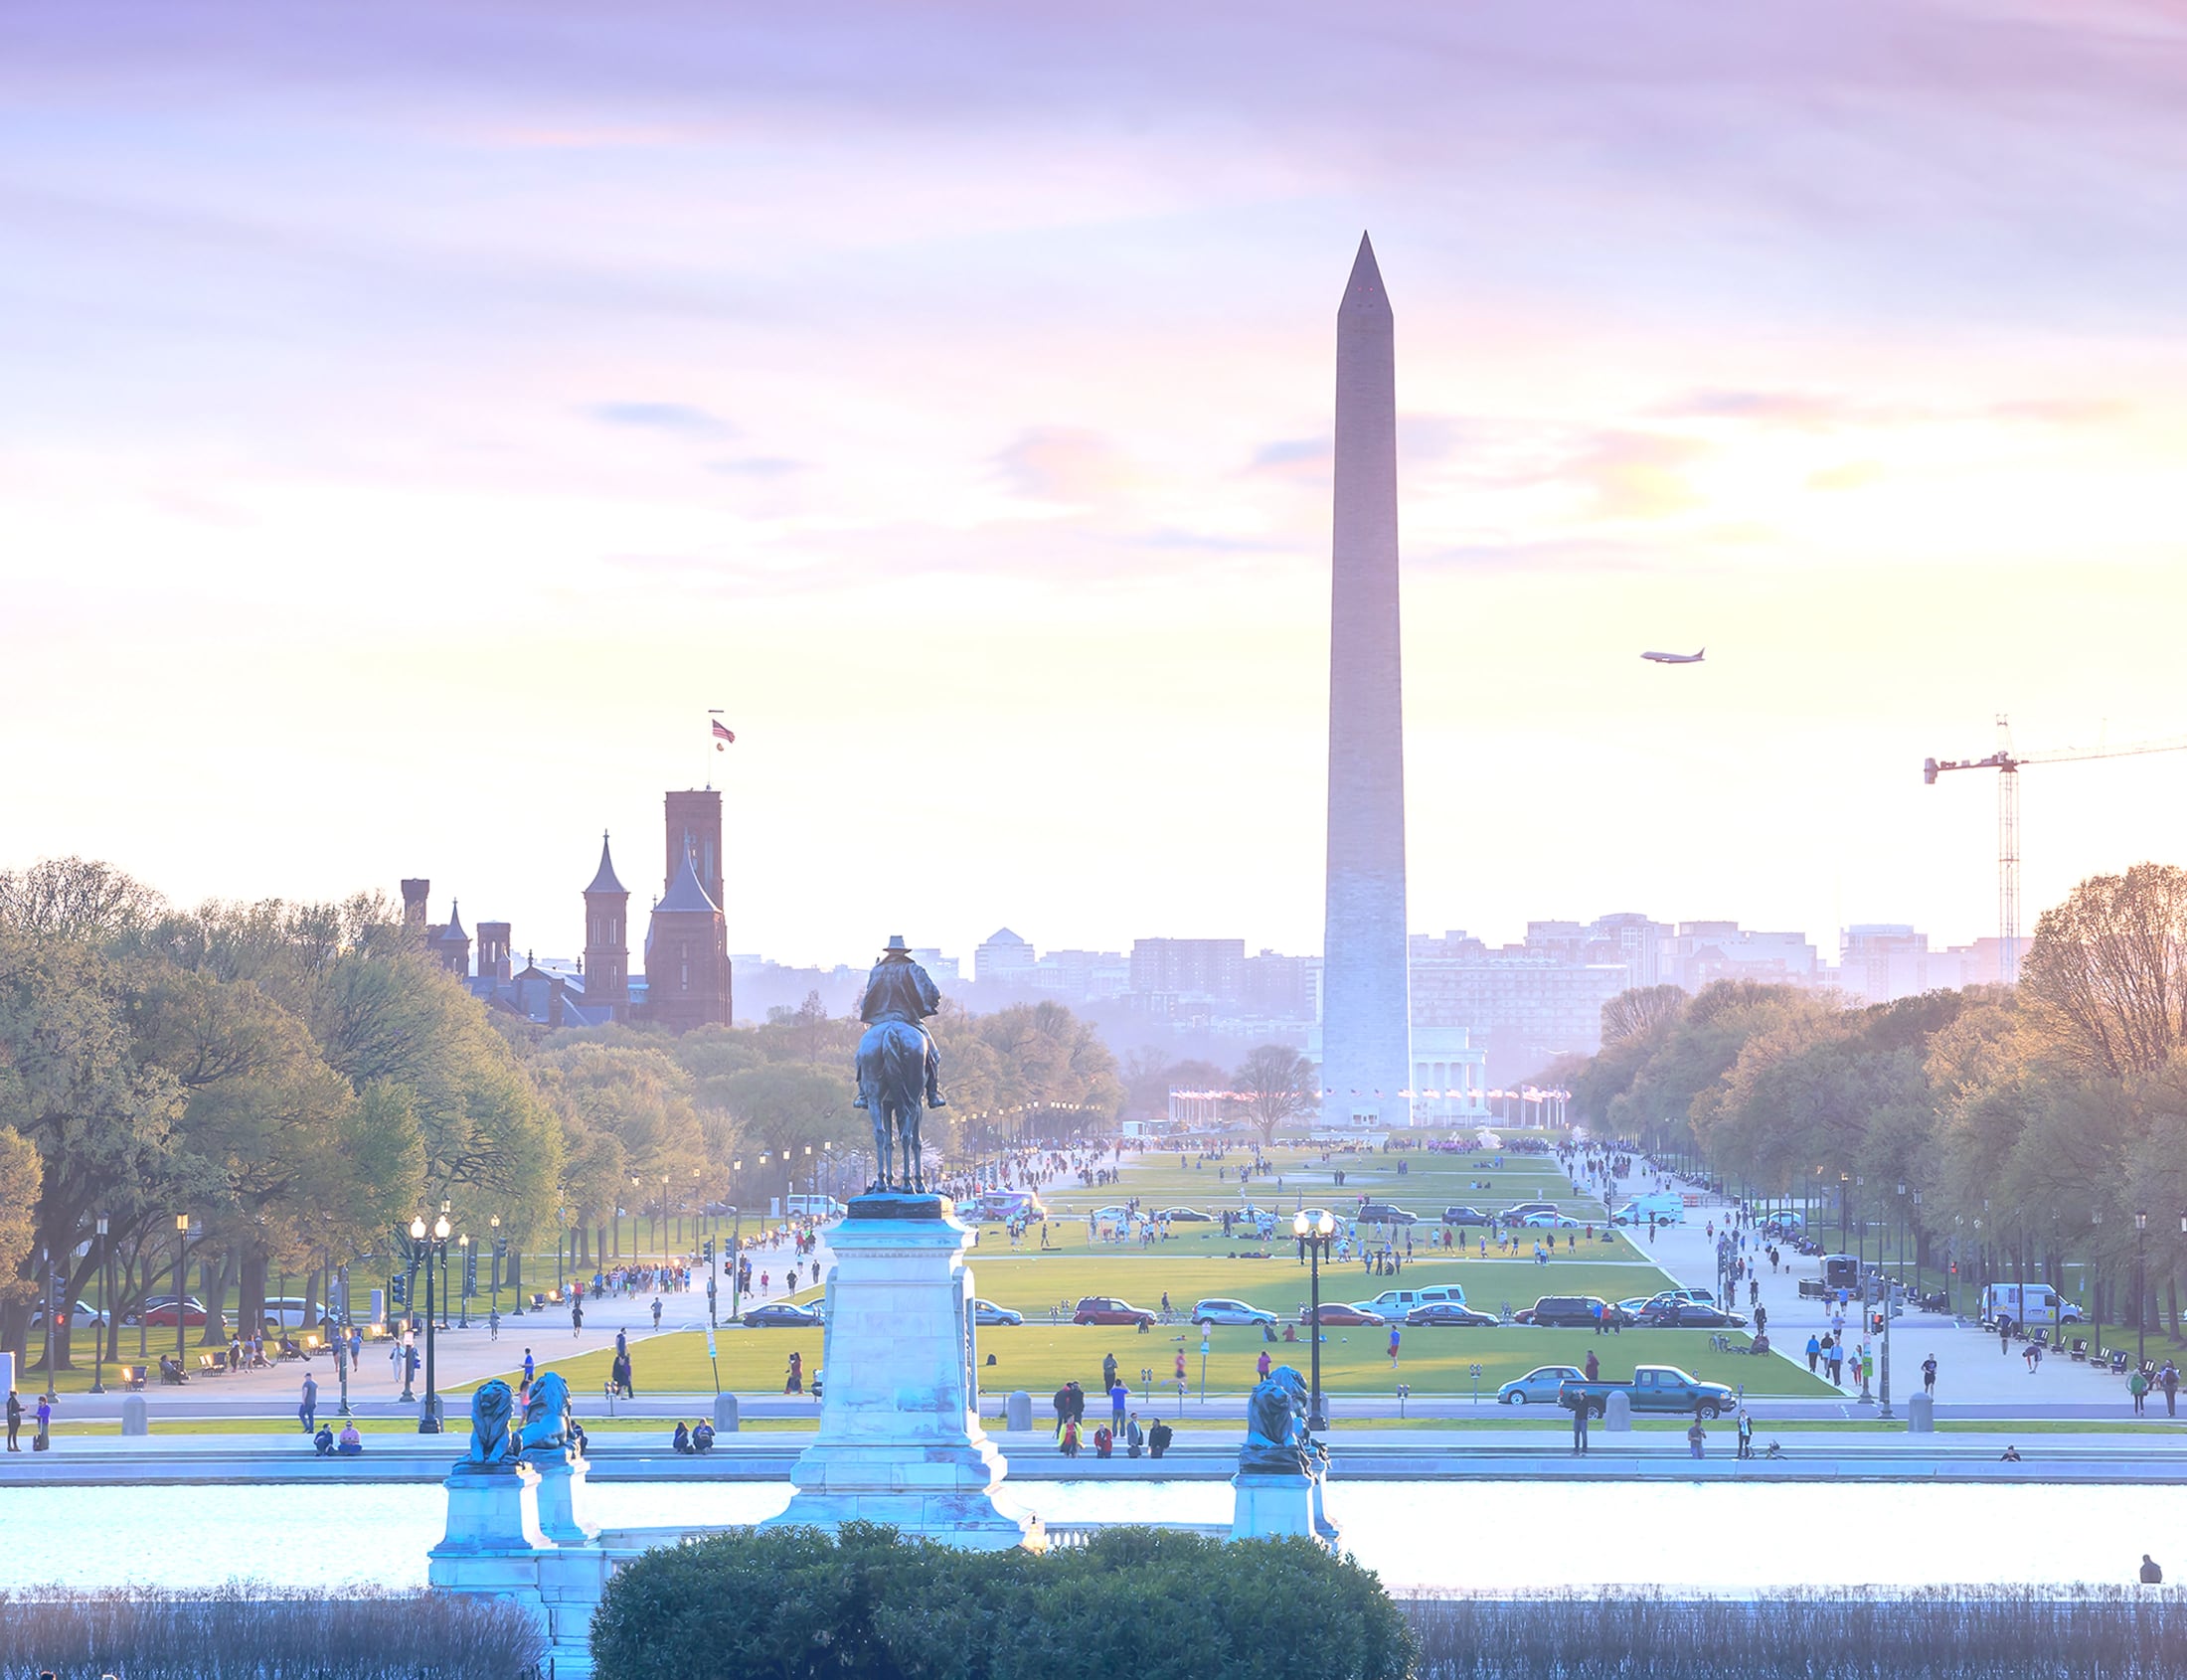 Background image of Washington D.C.